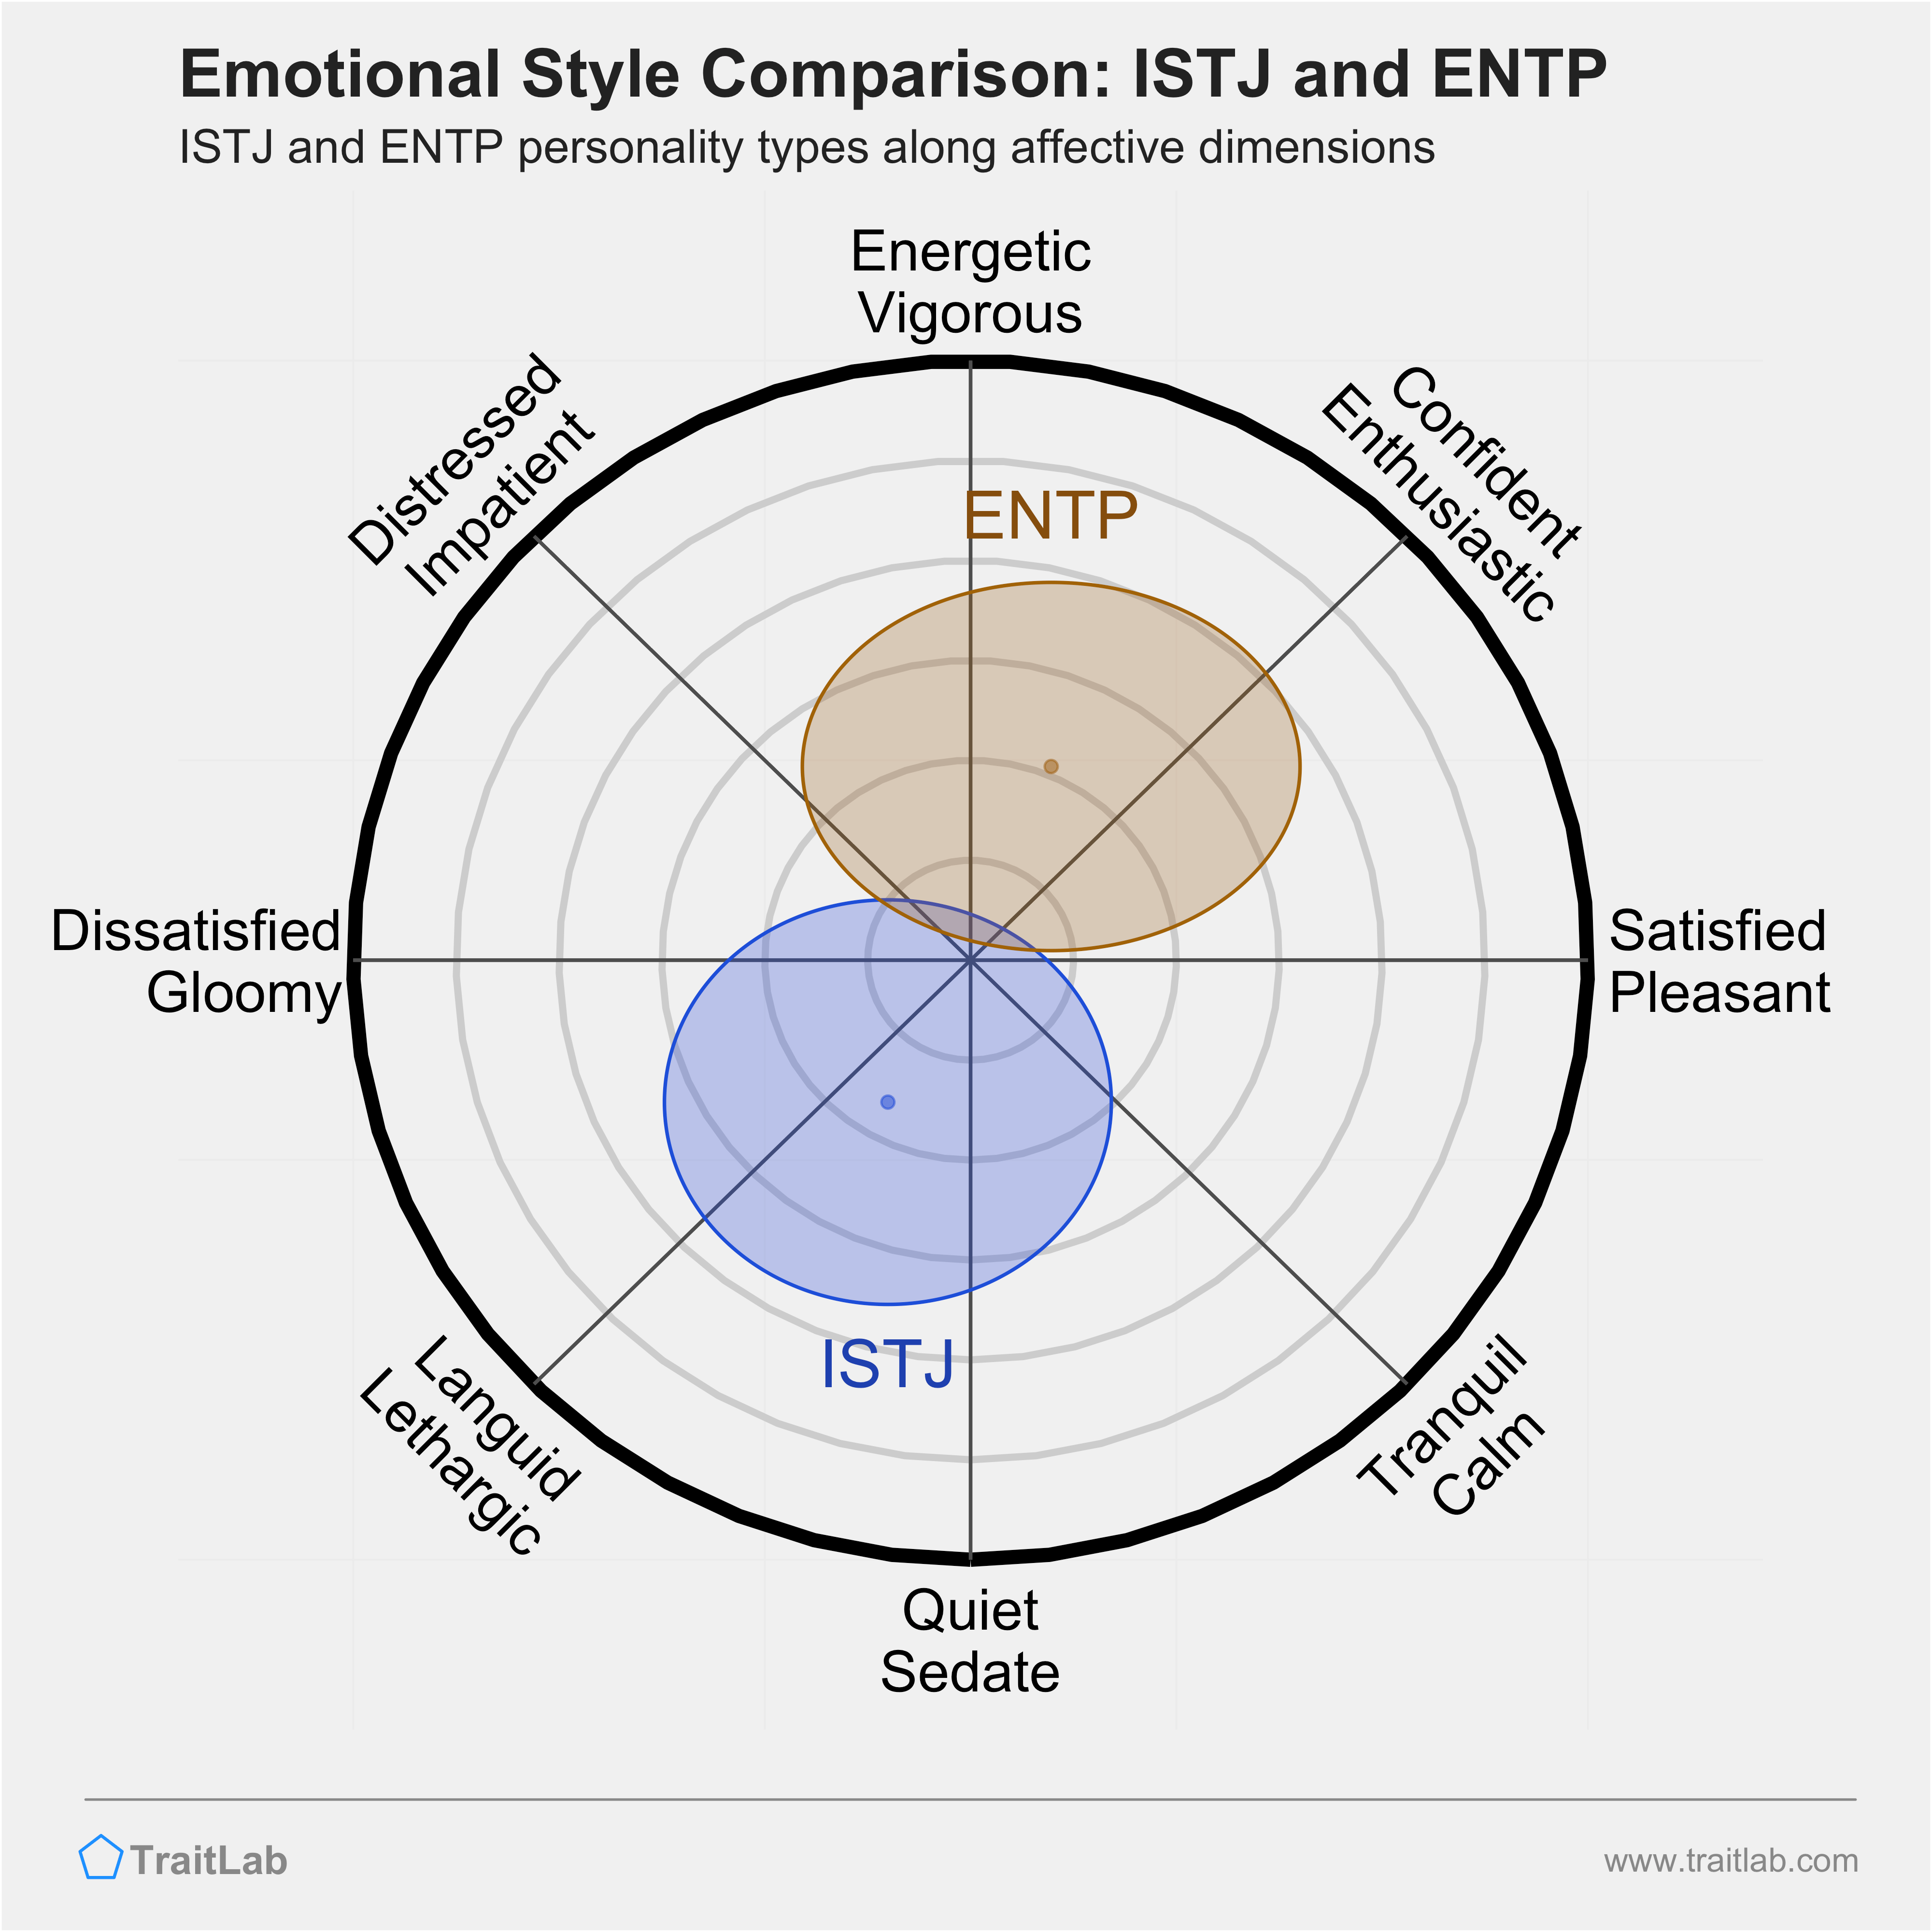 ISTJ and ENTP comparison across emotional (affective) dimensions